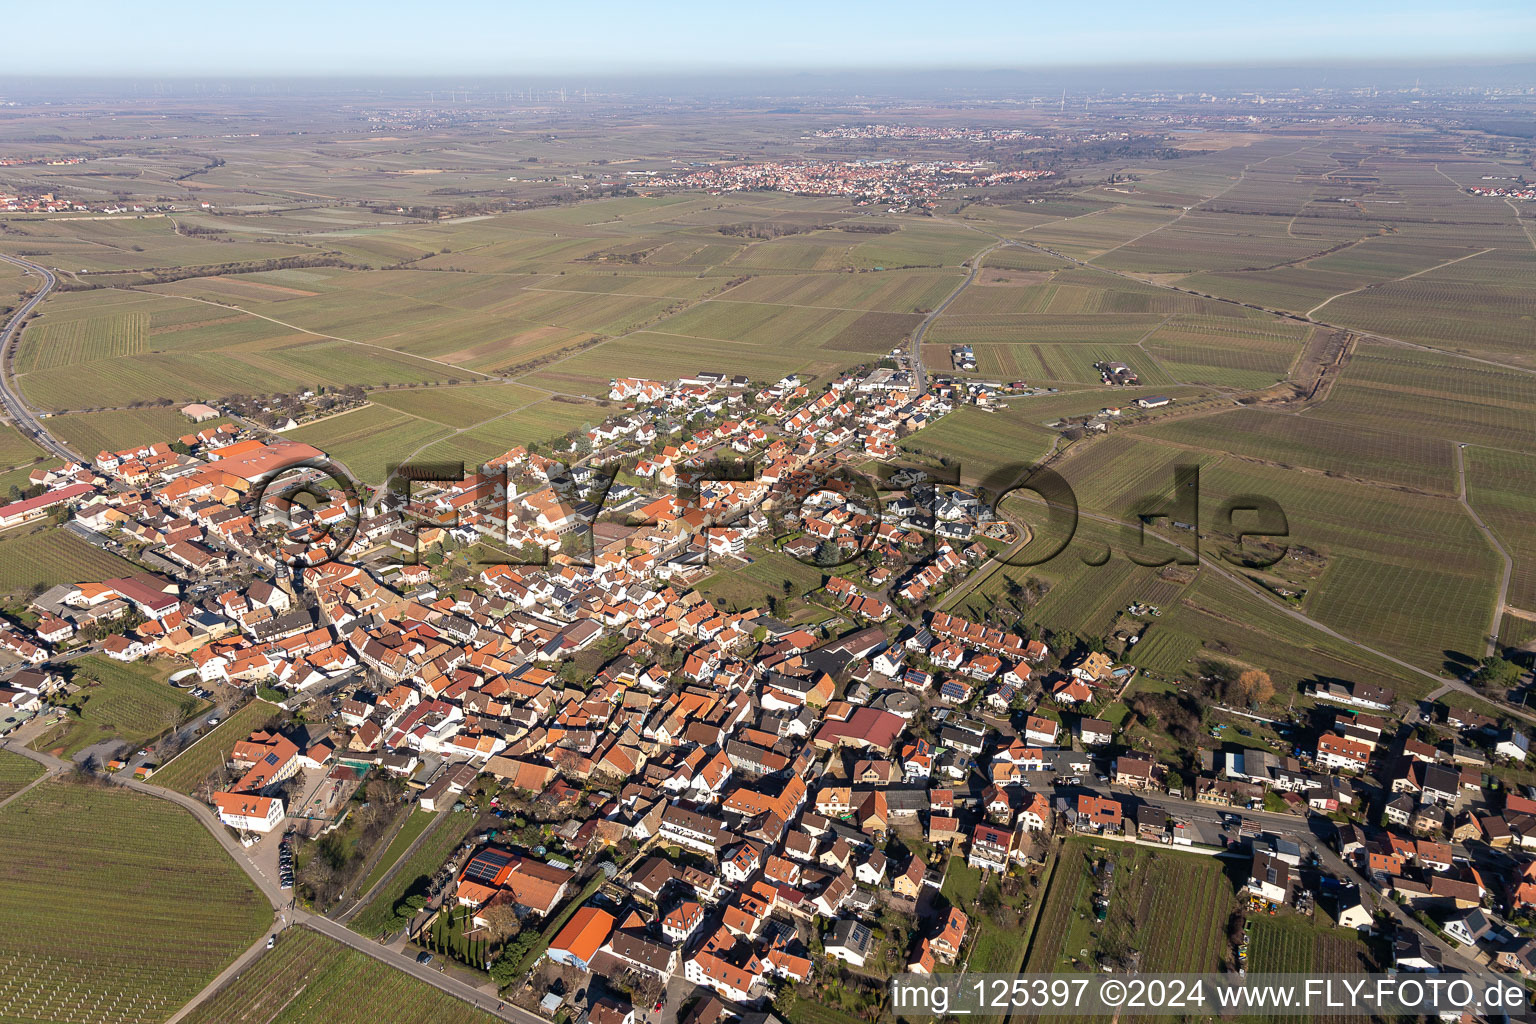 Luftbild von Stadtansicht vom Innenstadtbereich mit dem Stadtrand angrenzend an landwirtschaftliche Feldern in Kallstadt im Bundesland Rheinland-Pfalz, Deutschland